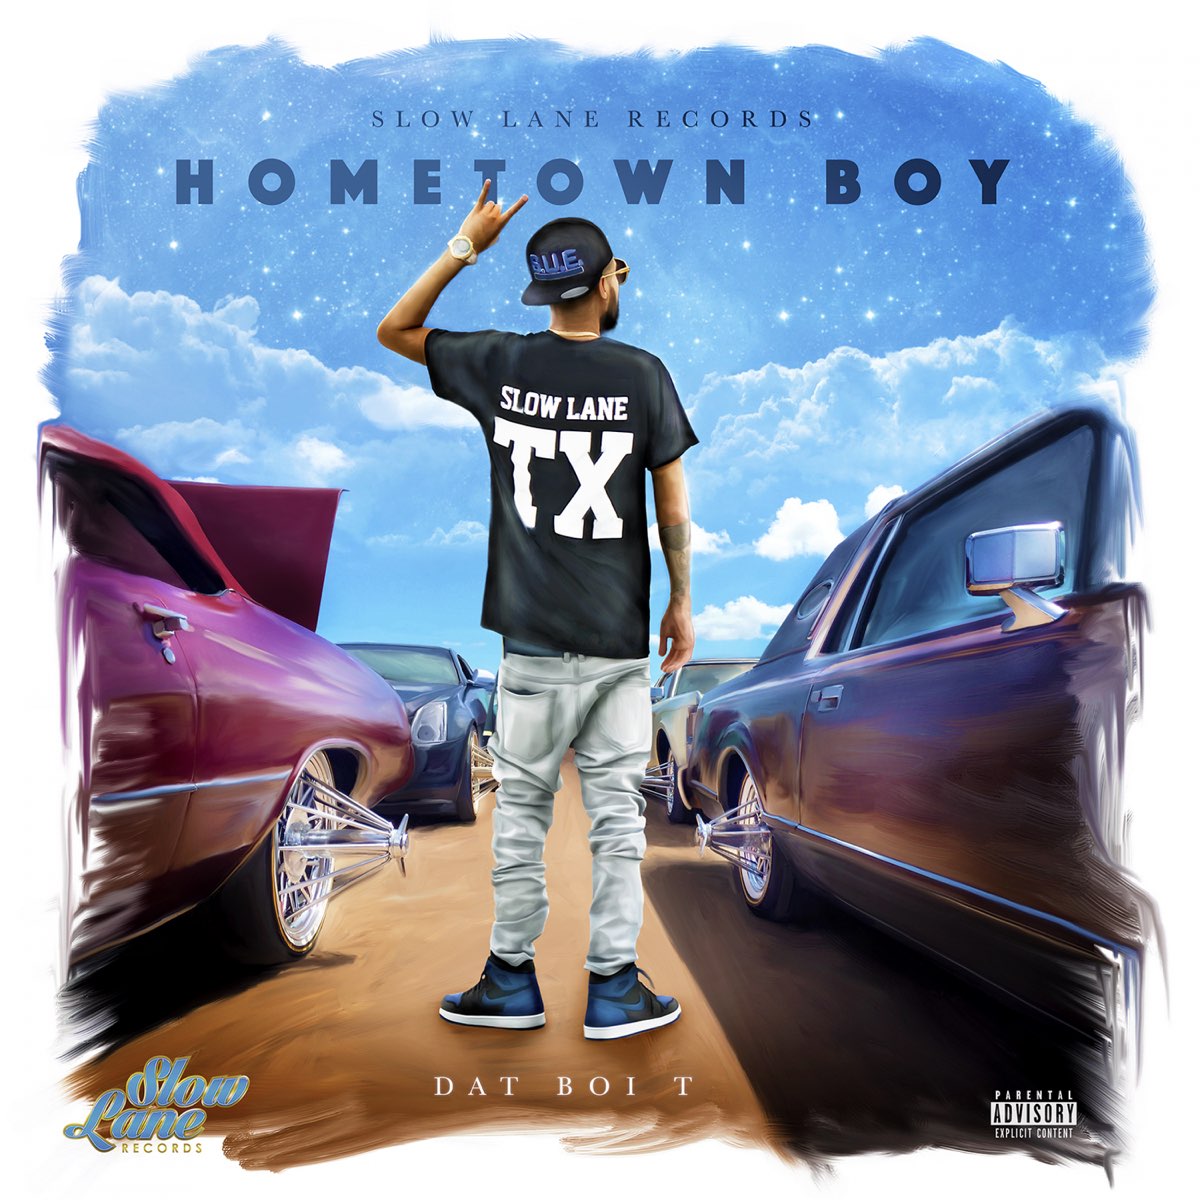 Hometown Boy by Dat Boi T on Apple Music